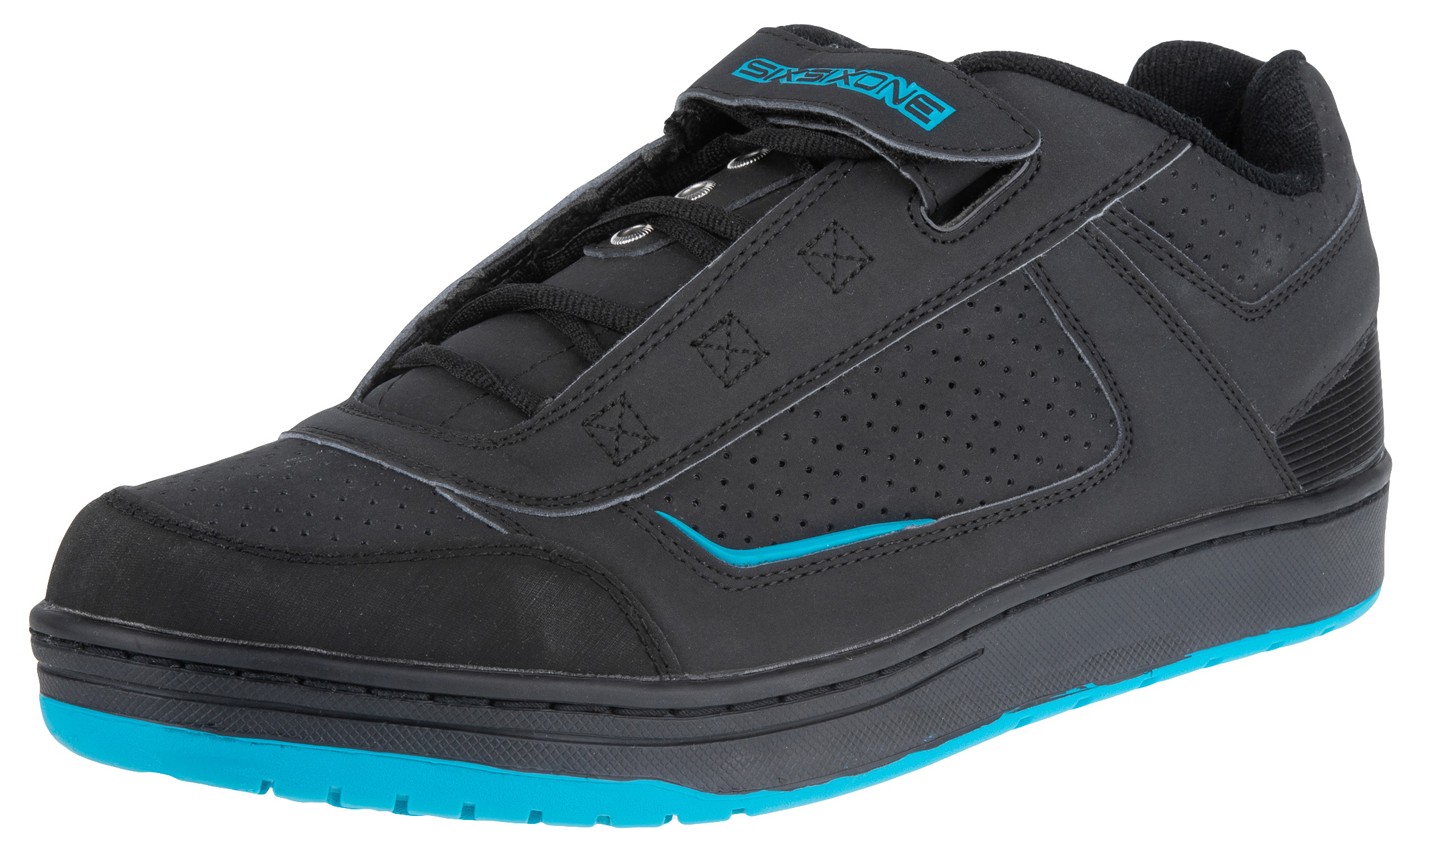 Фотография Велосипедная обувь SixSixOne Filter SPD, Черный/Голубой, US 8,5 / EU 41